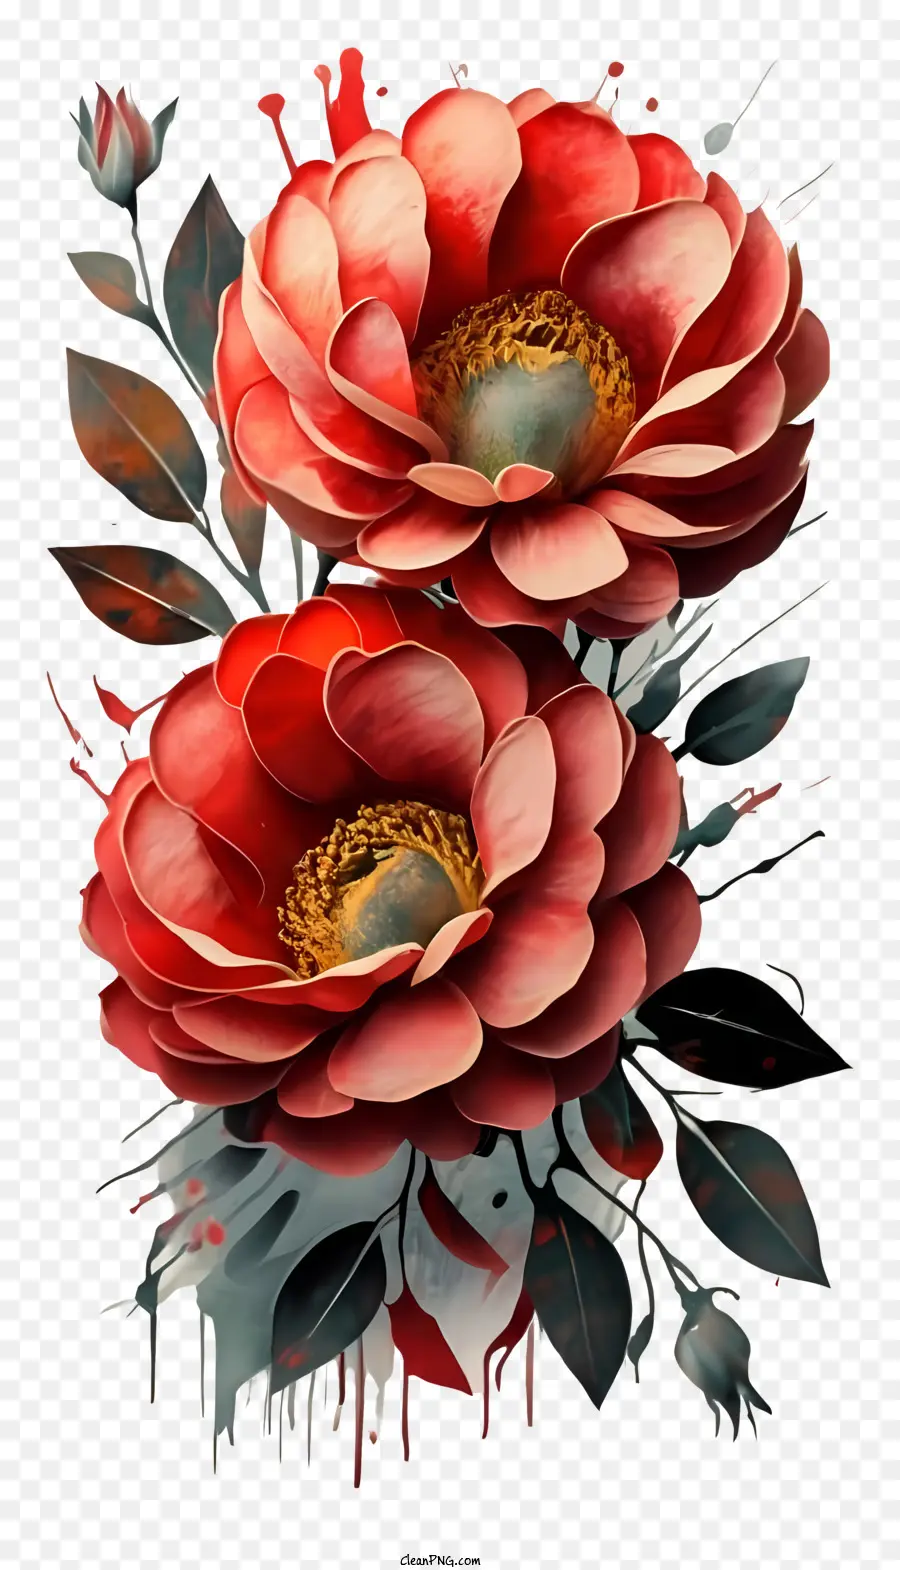 Digitales Gemälde rote Blumen Tropfen schwarzer Farbe schwarzer Hintergrund Vase oder Topf - Digitales Gemälde von roten Blumen mit schwarzer Farbe